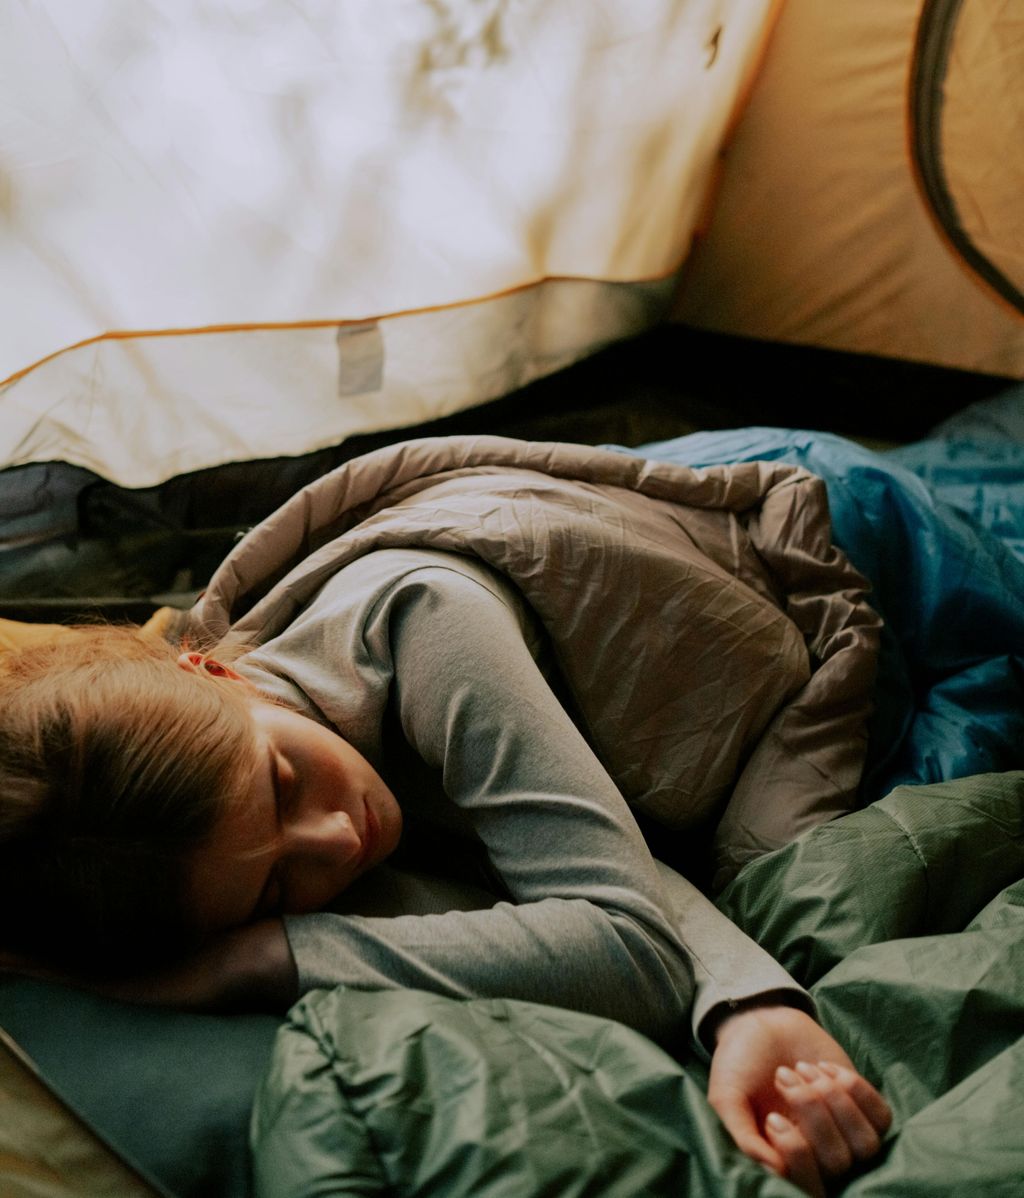 El saco de dormir es imprescindible para ir de acampada. FUENTE: Pexels